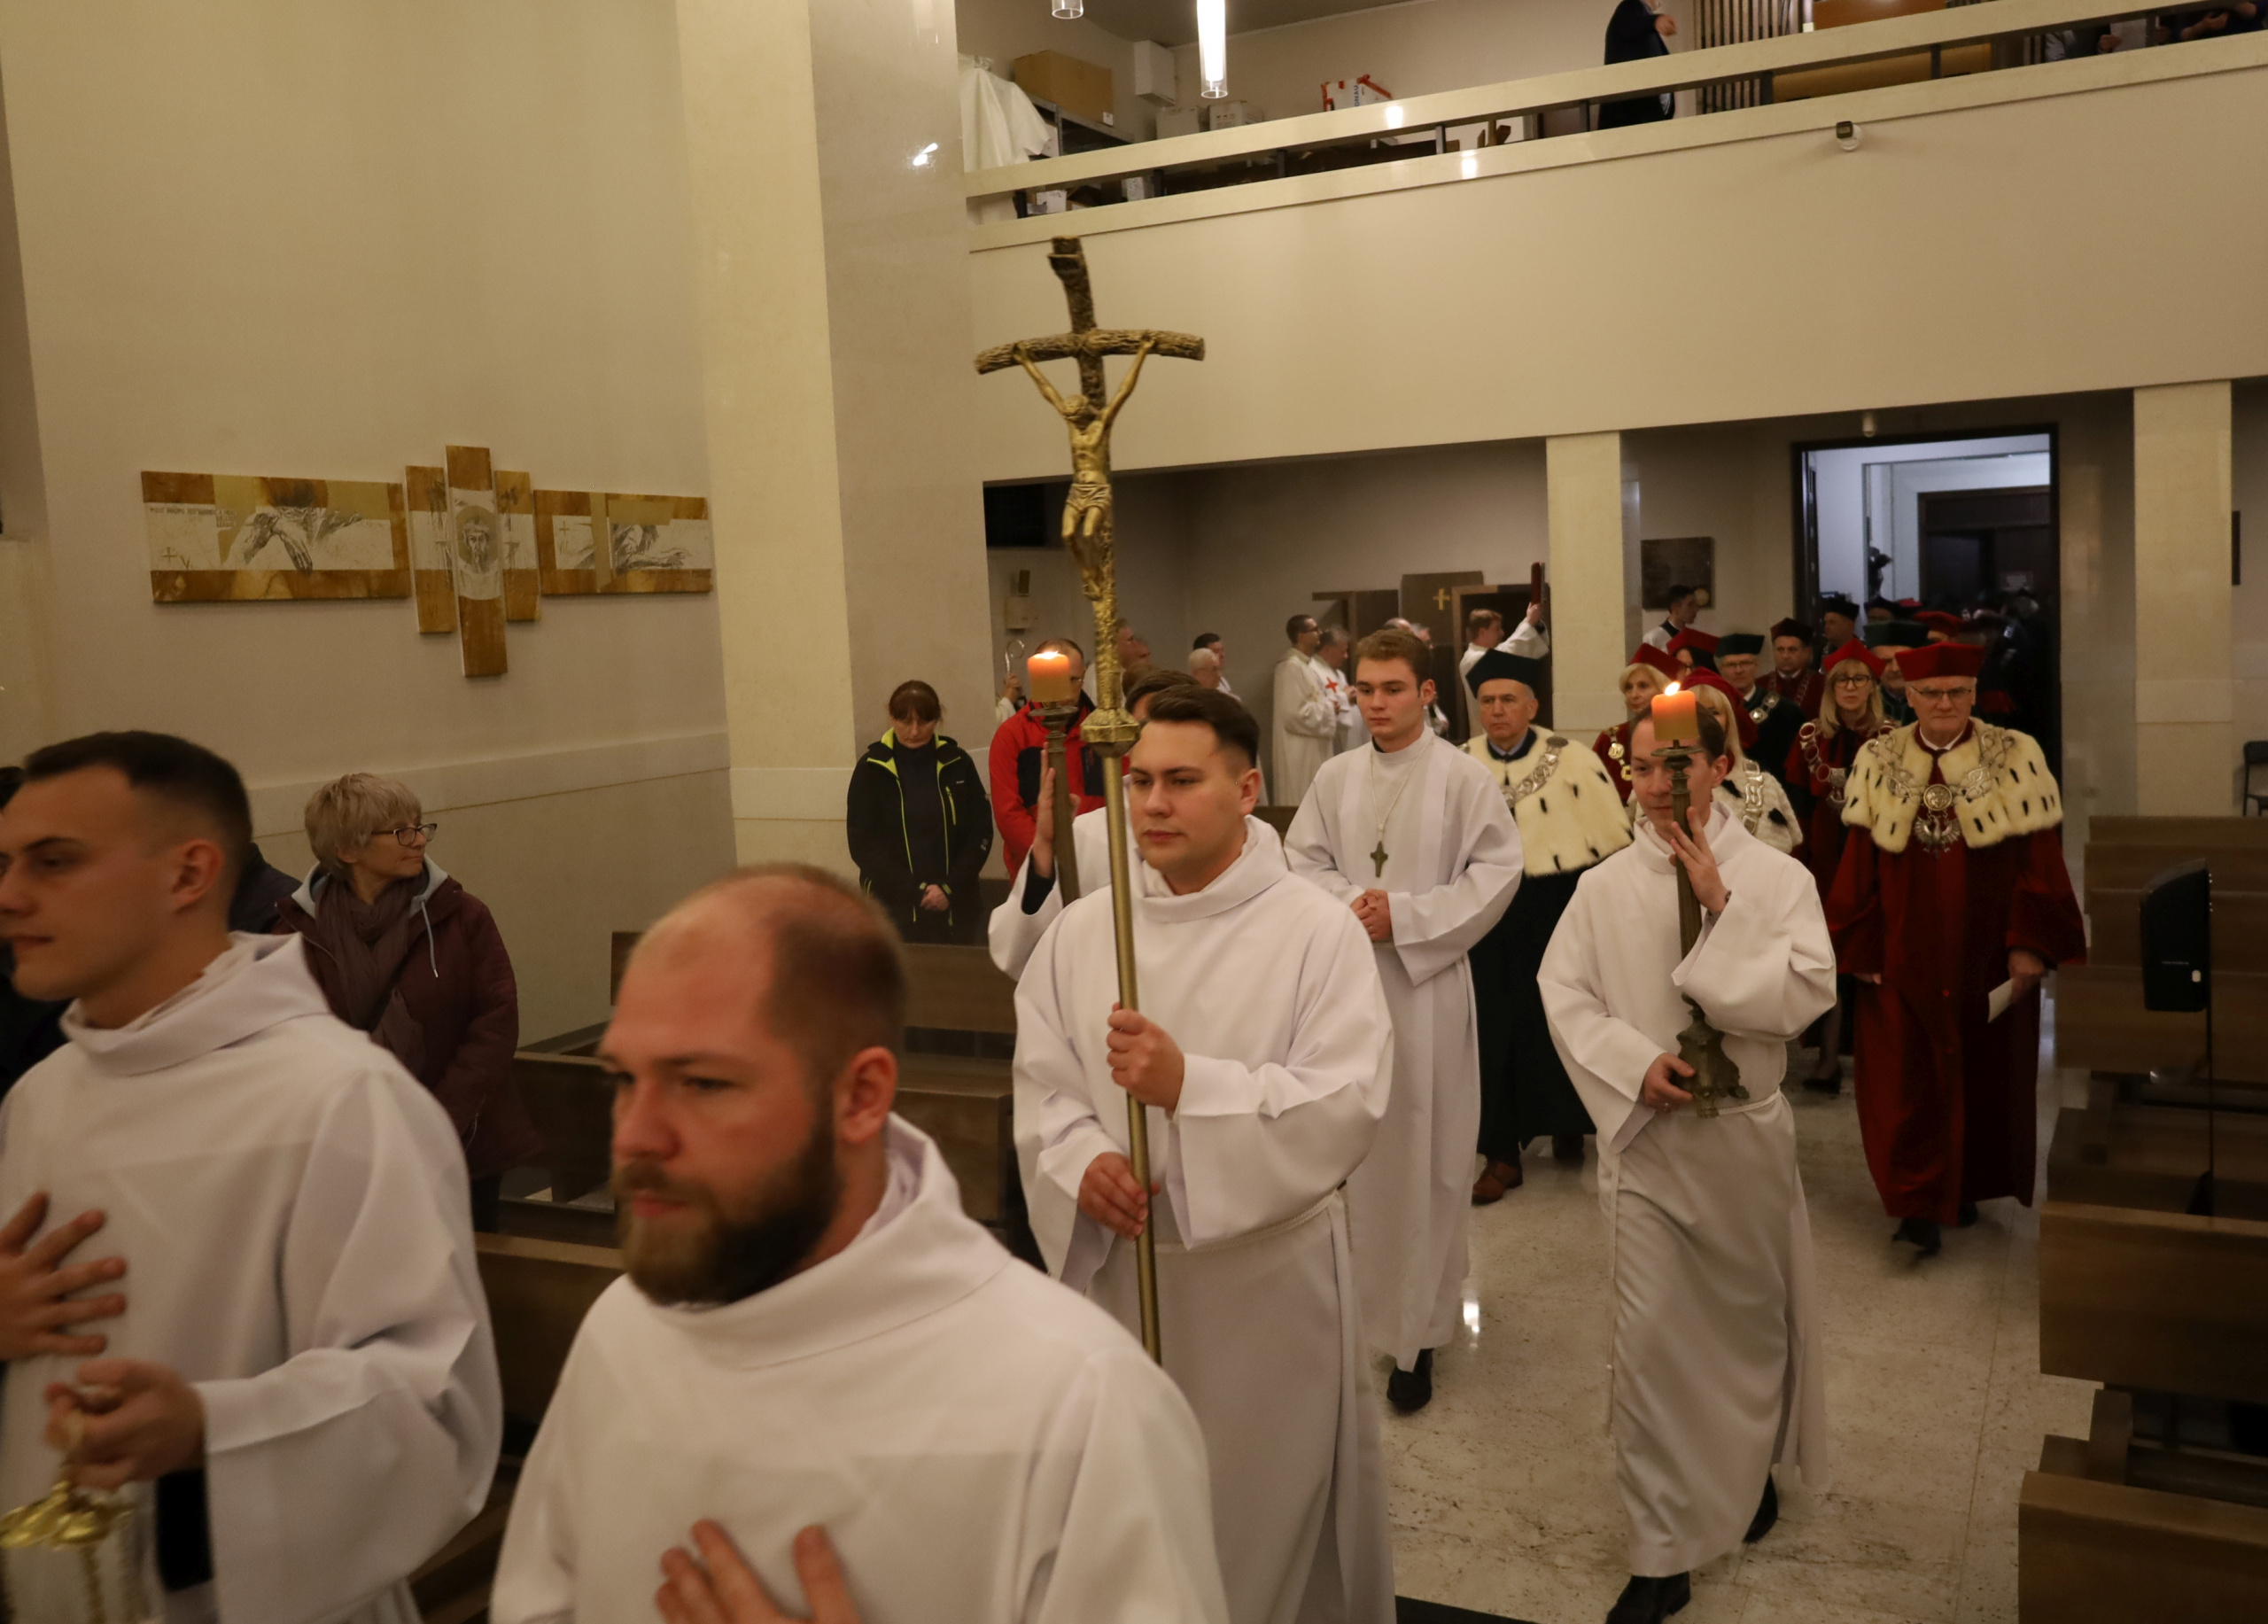 Celebransi z krzyżem w kościele akademickim, za nimi władze kieleckich uczelni.